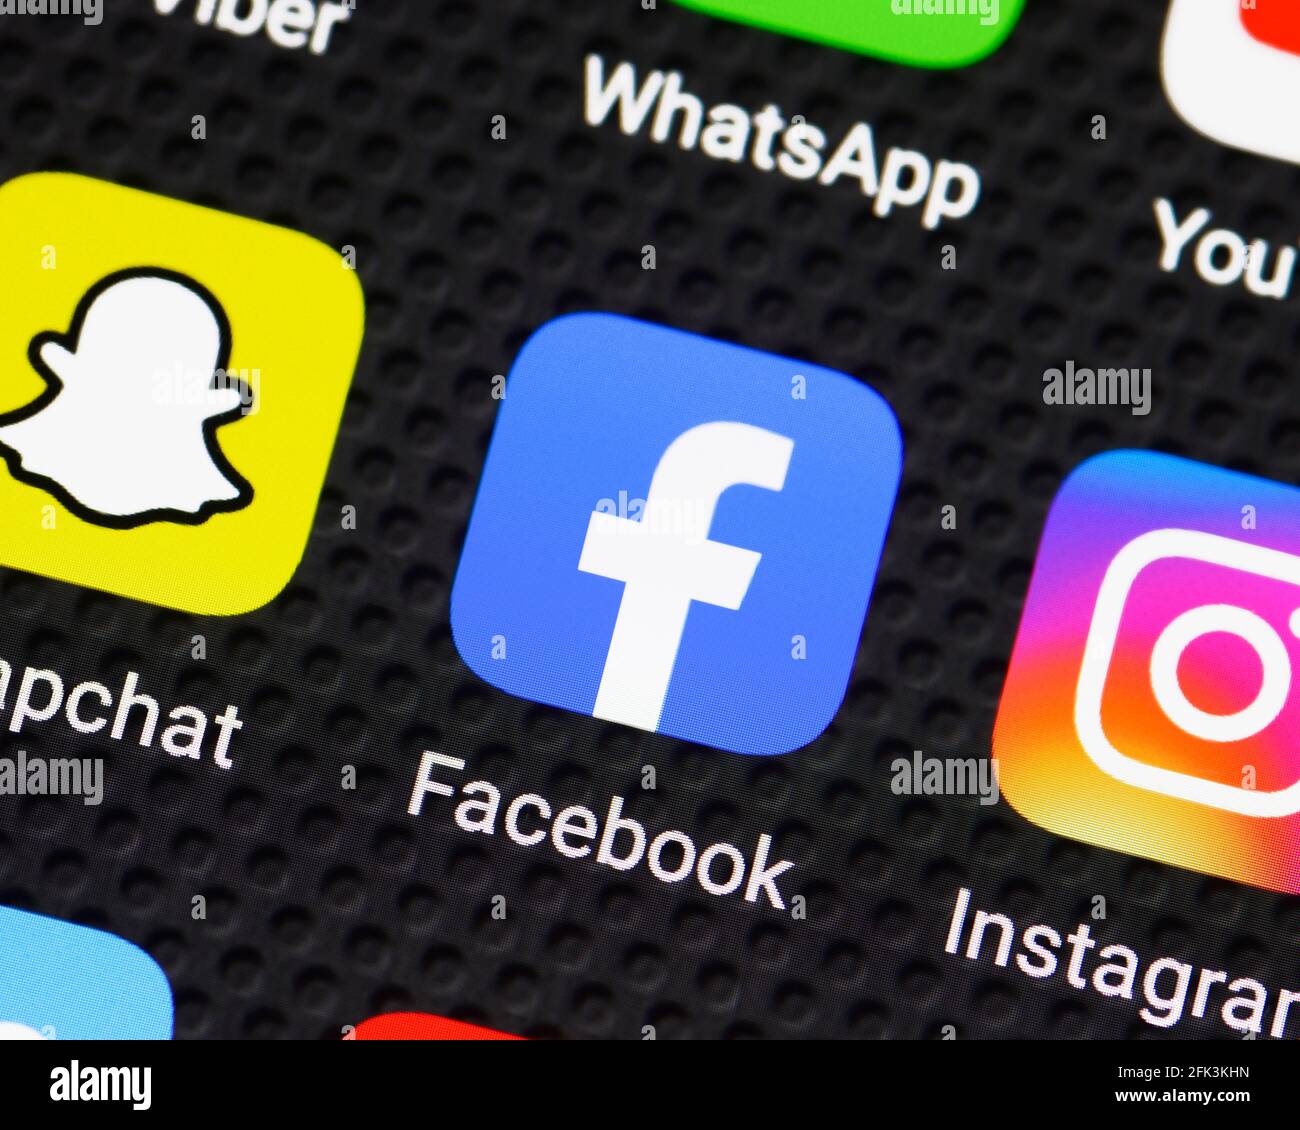 Facebook-App-Symbol auf einem Smartphone, Nahaufnahme Stockfoto